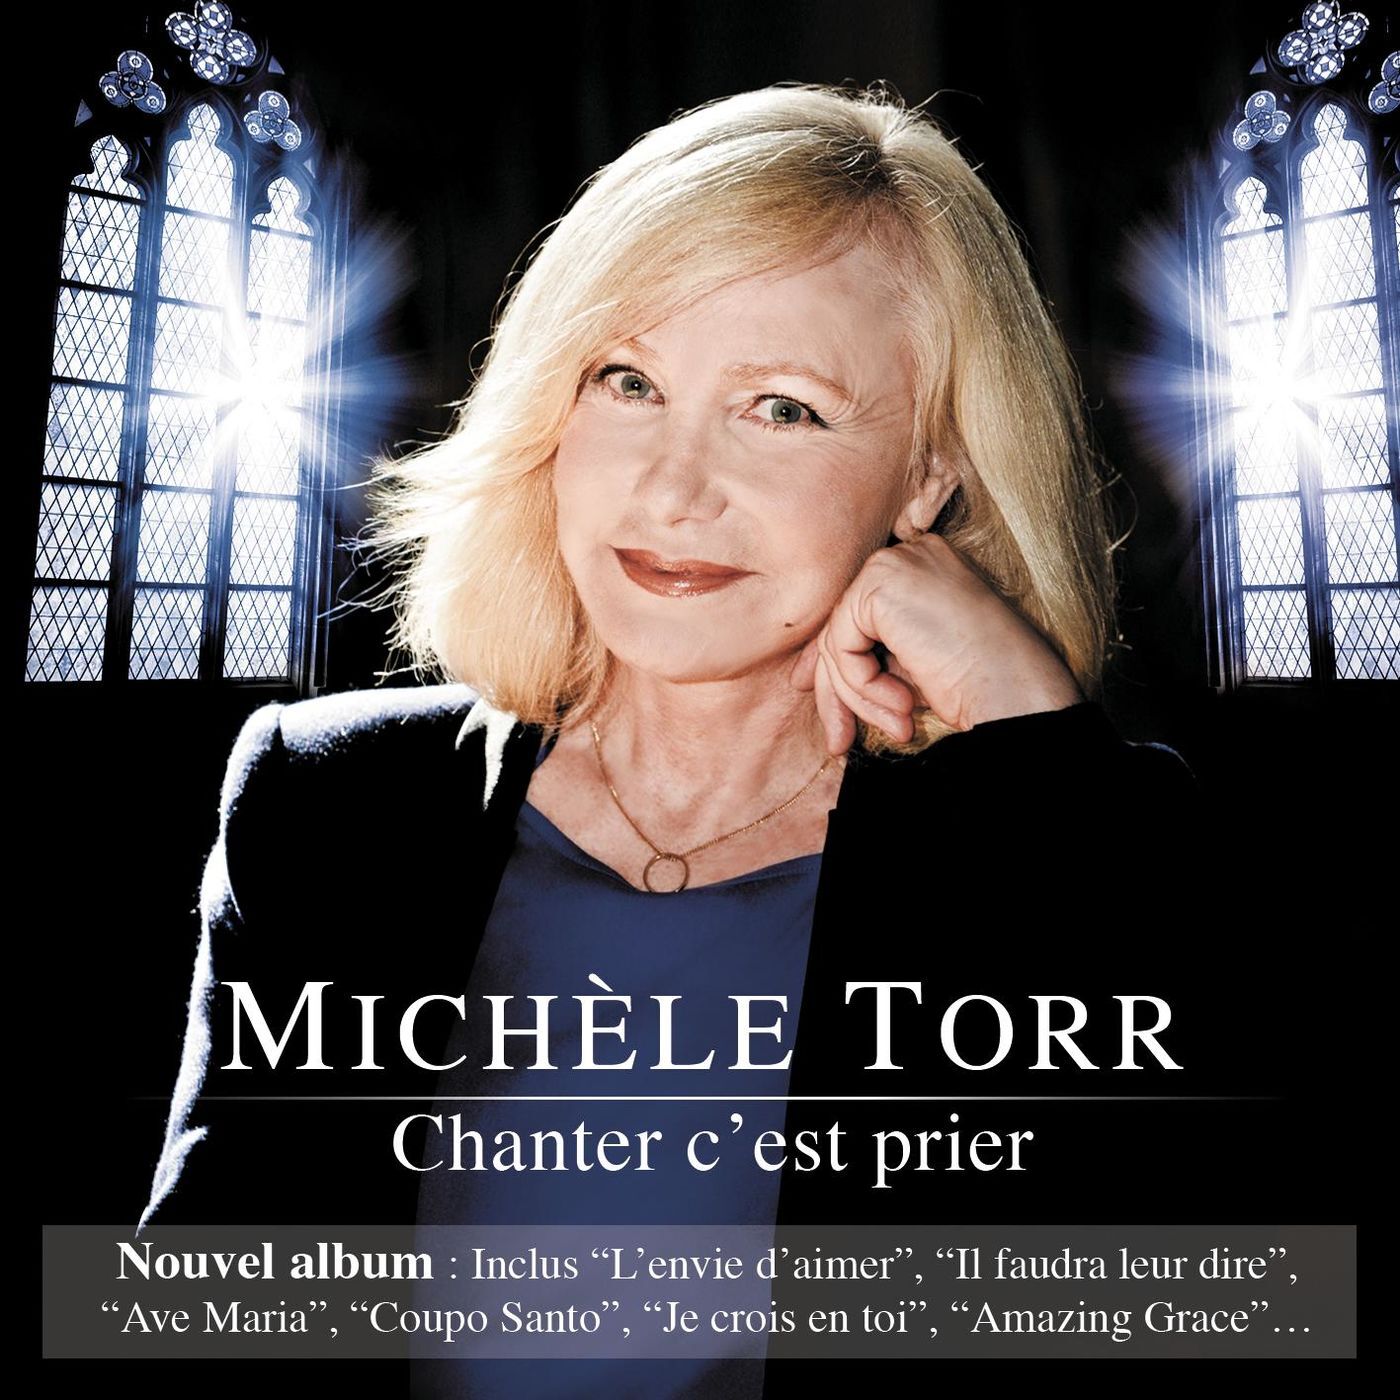 Michèle Torr Chanter c'est prier 2012 - FLAC